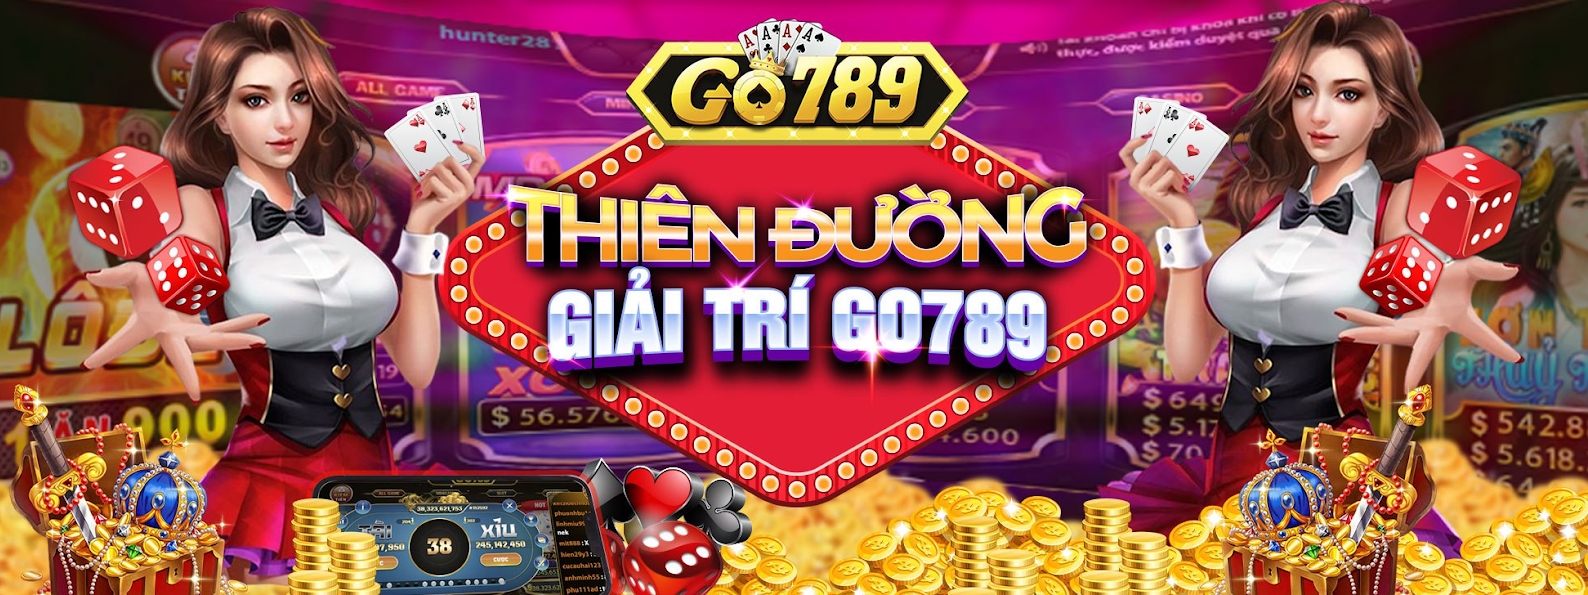 Go 789 - Game bài đổi thưởng uy tín hàng đầu hiện nay